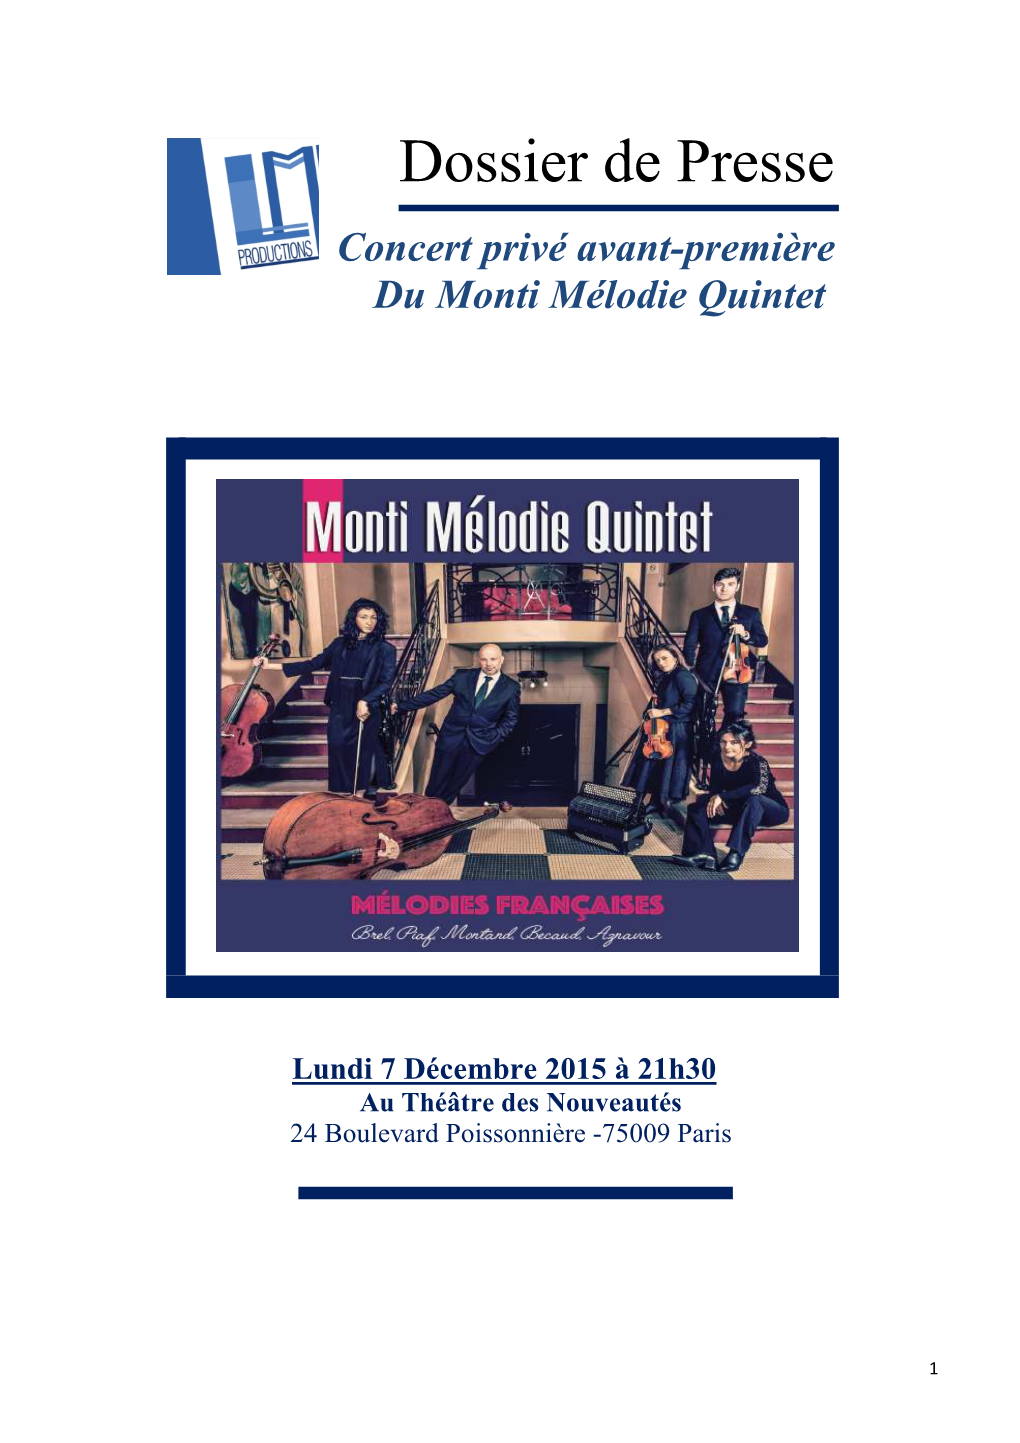 Dossier De Presse Monti Melodie Quintet 7 12 2015